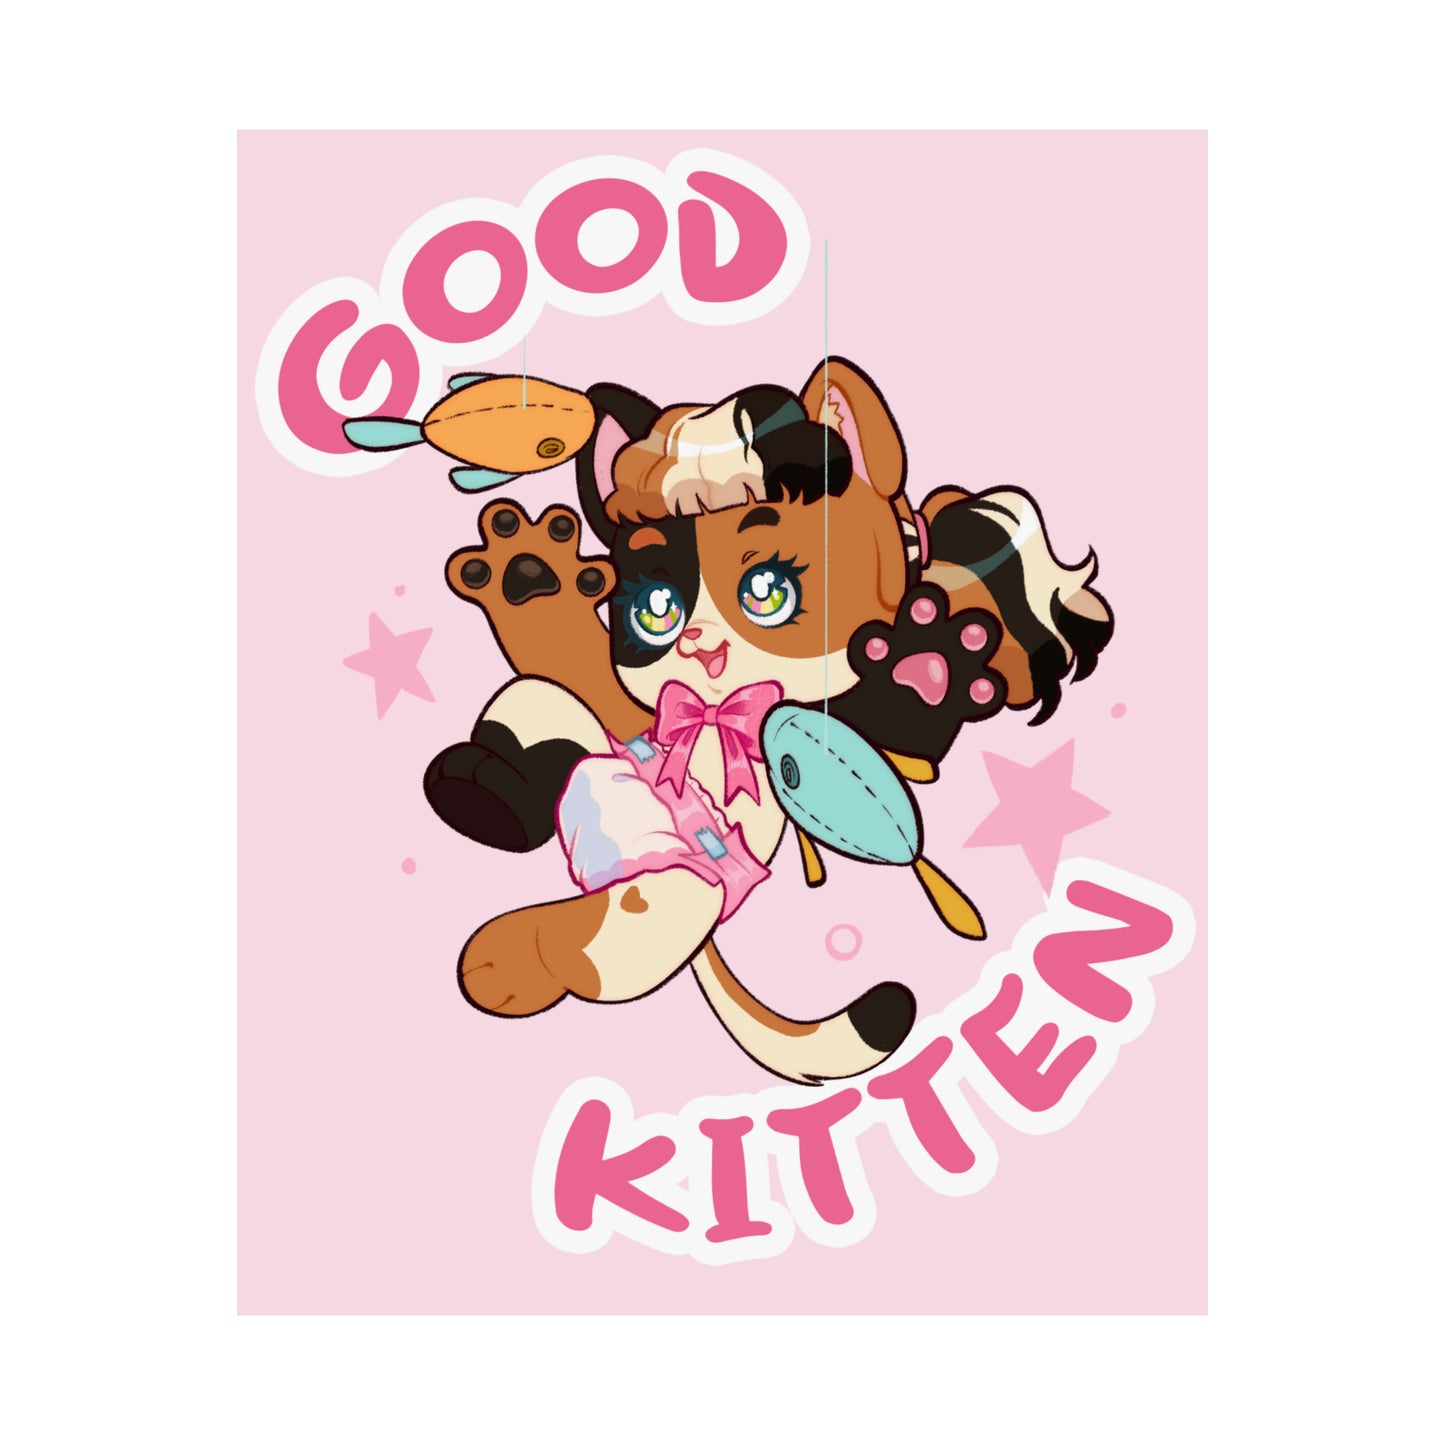 Good Kitten - Playful Matte Posters